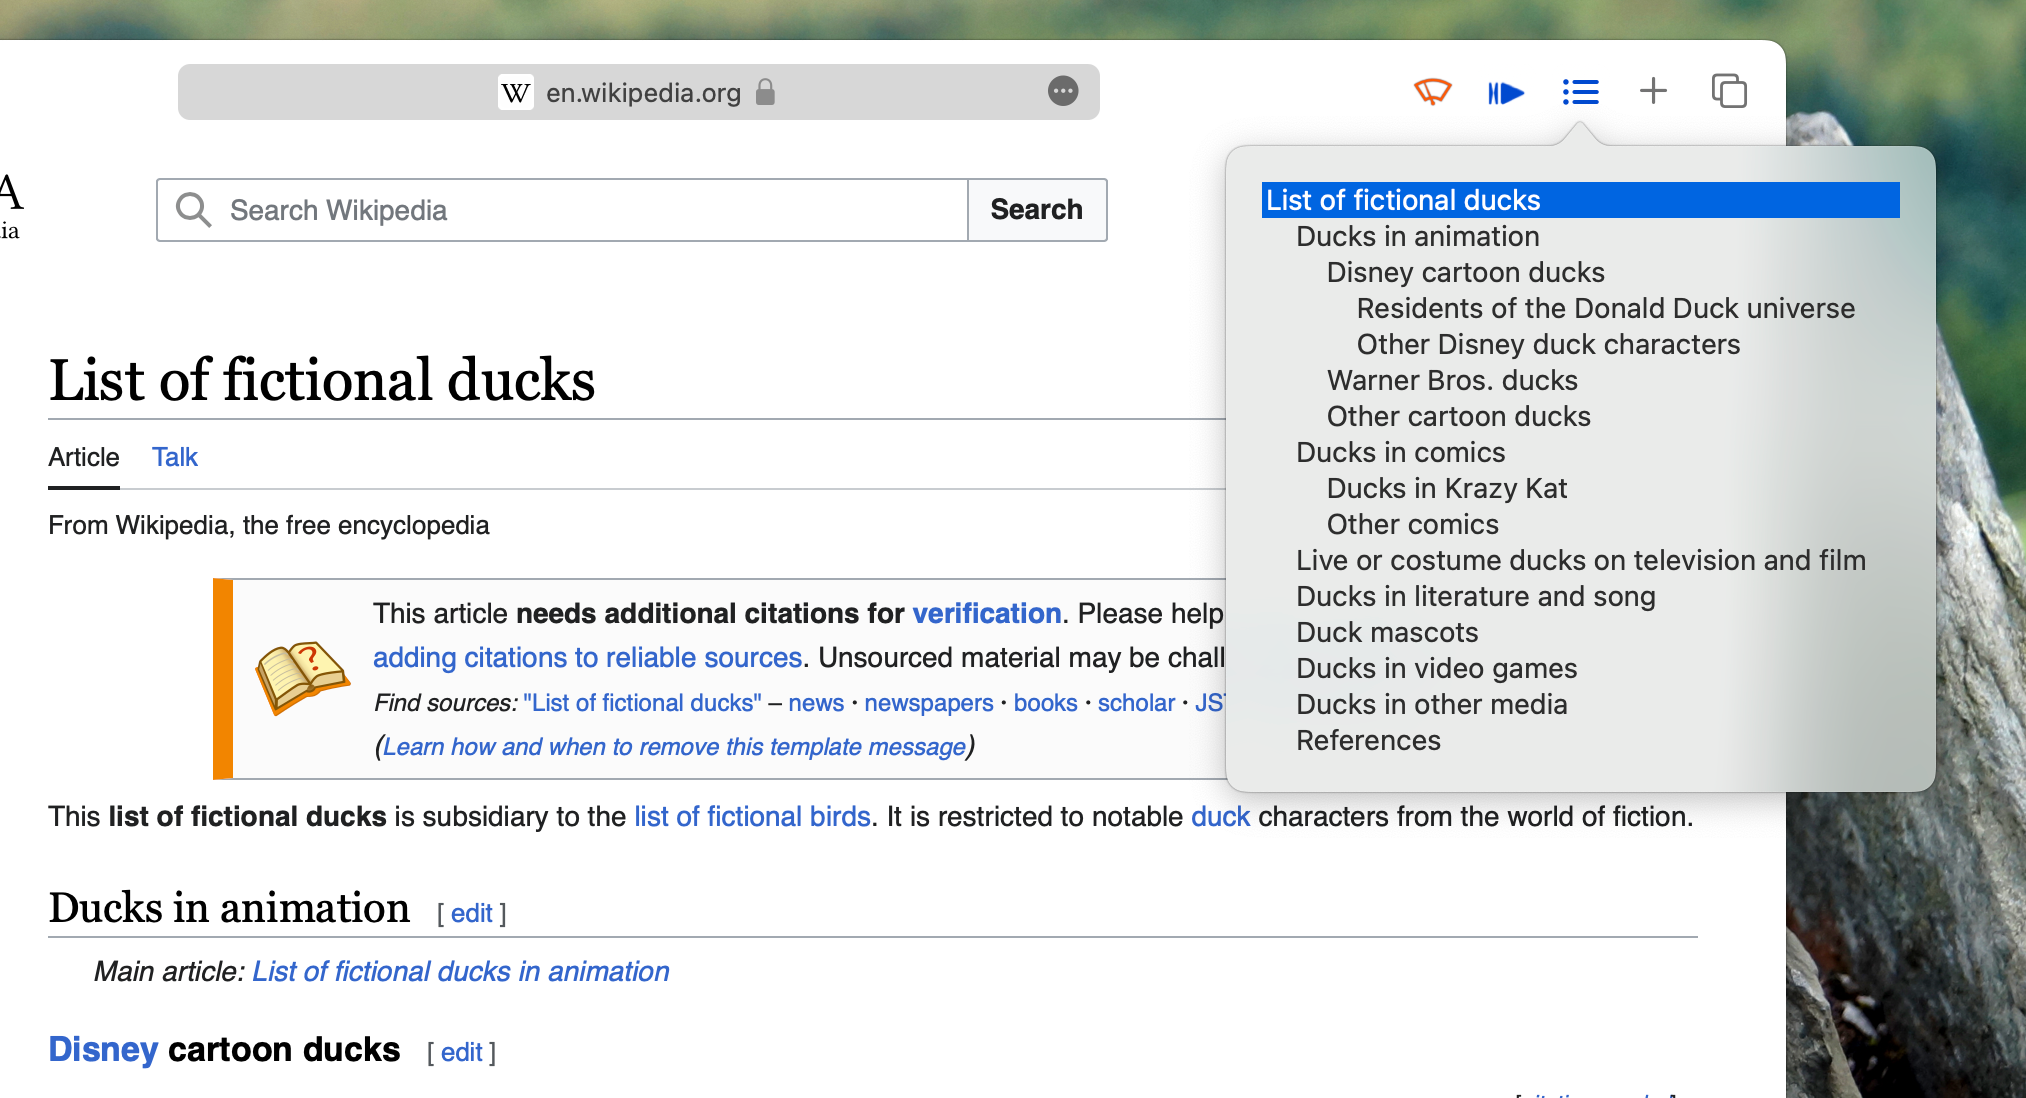 Статья в Википедии, в которой перечислены вымышленные утки, с оглавлением, созданным расширением браузера Table of Contents для Safari.